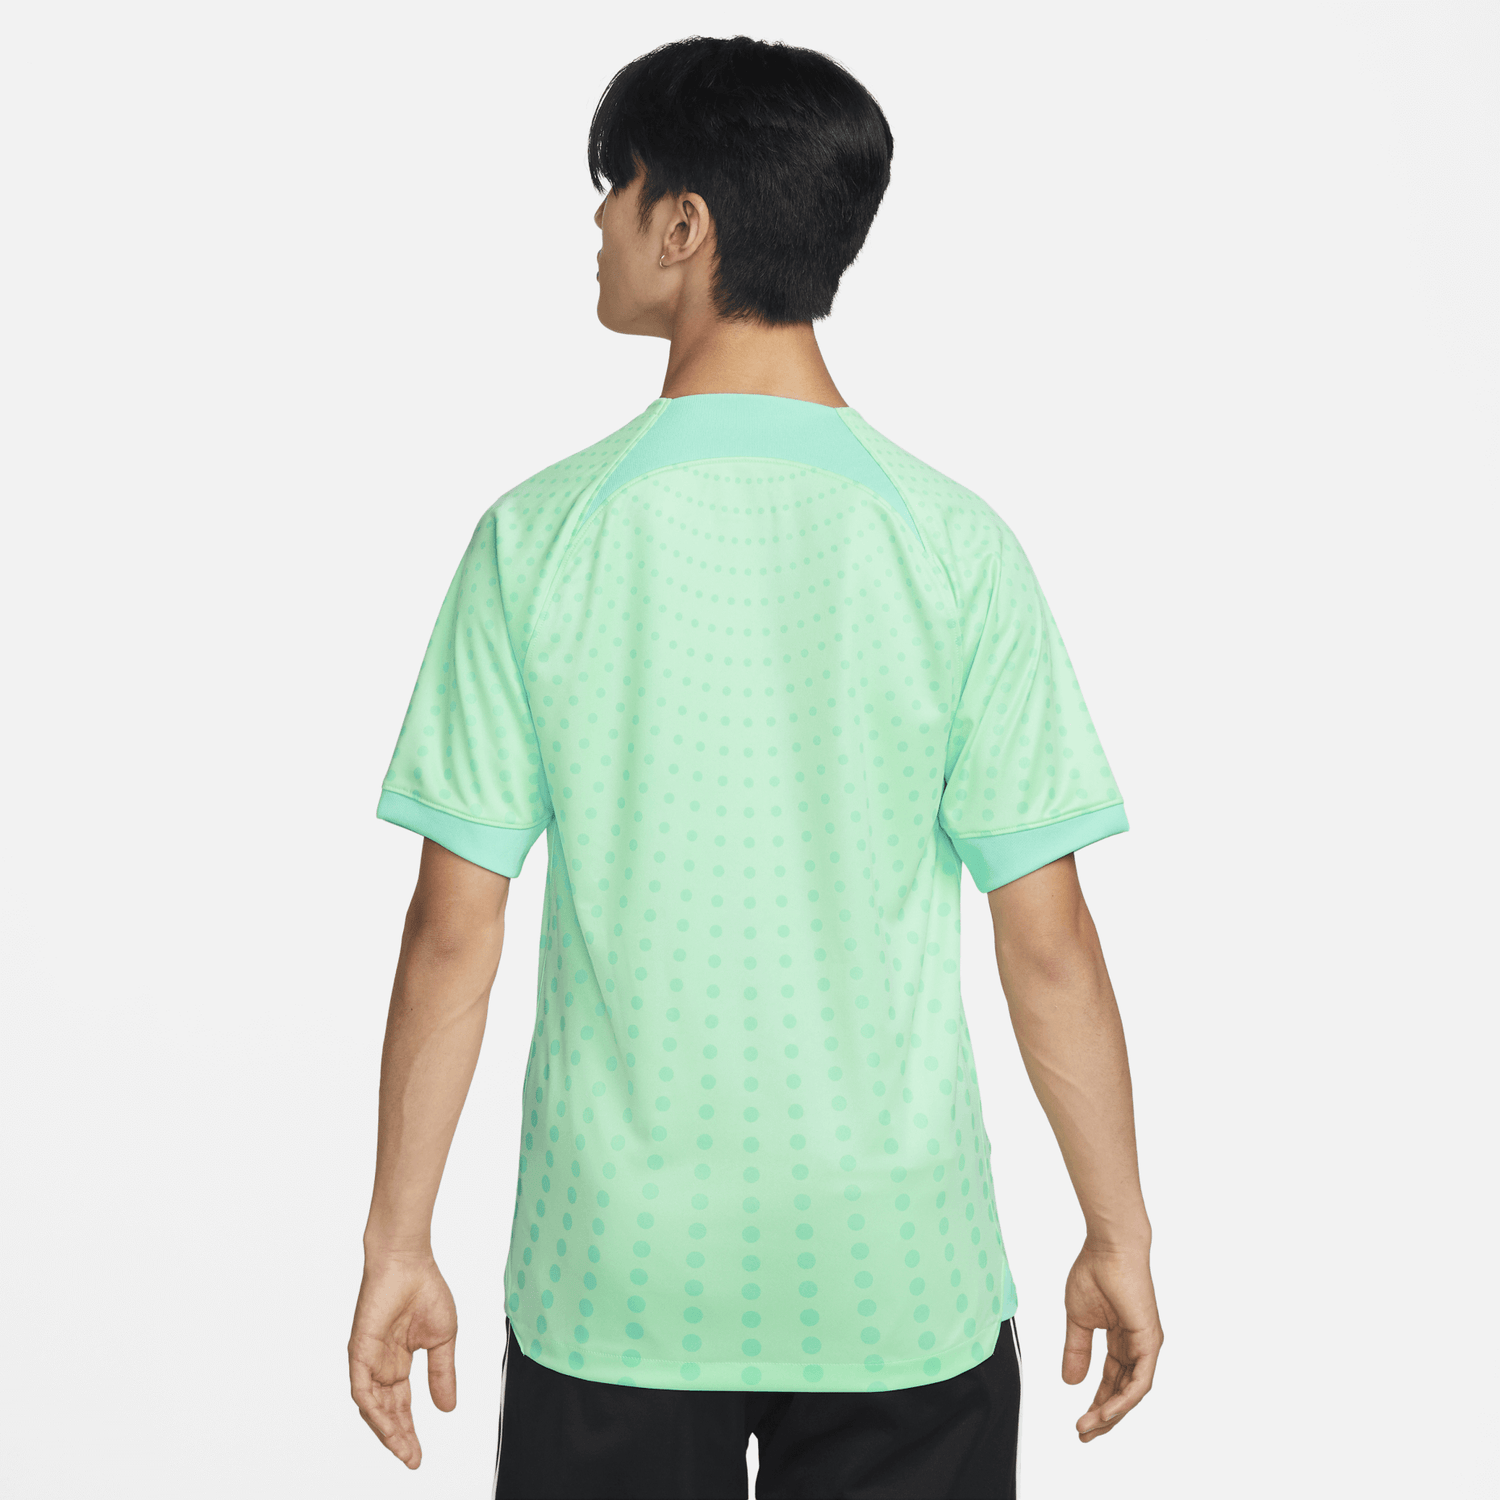 Nike 2022-23 China Jersey - Mint Green